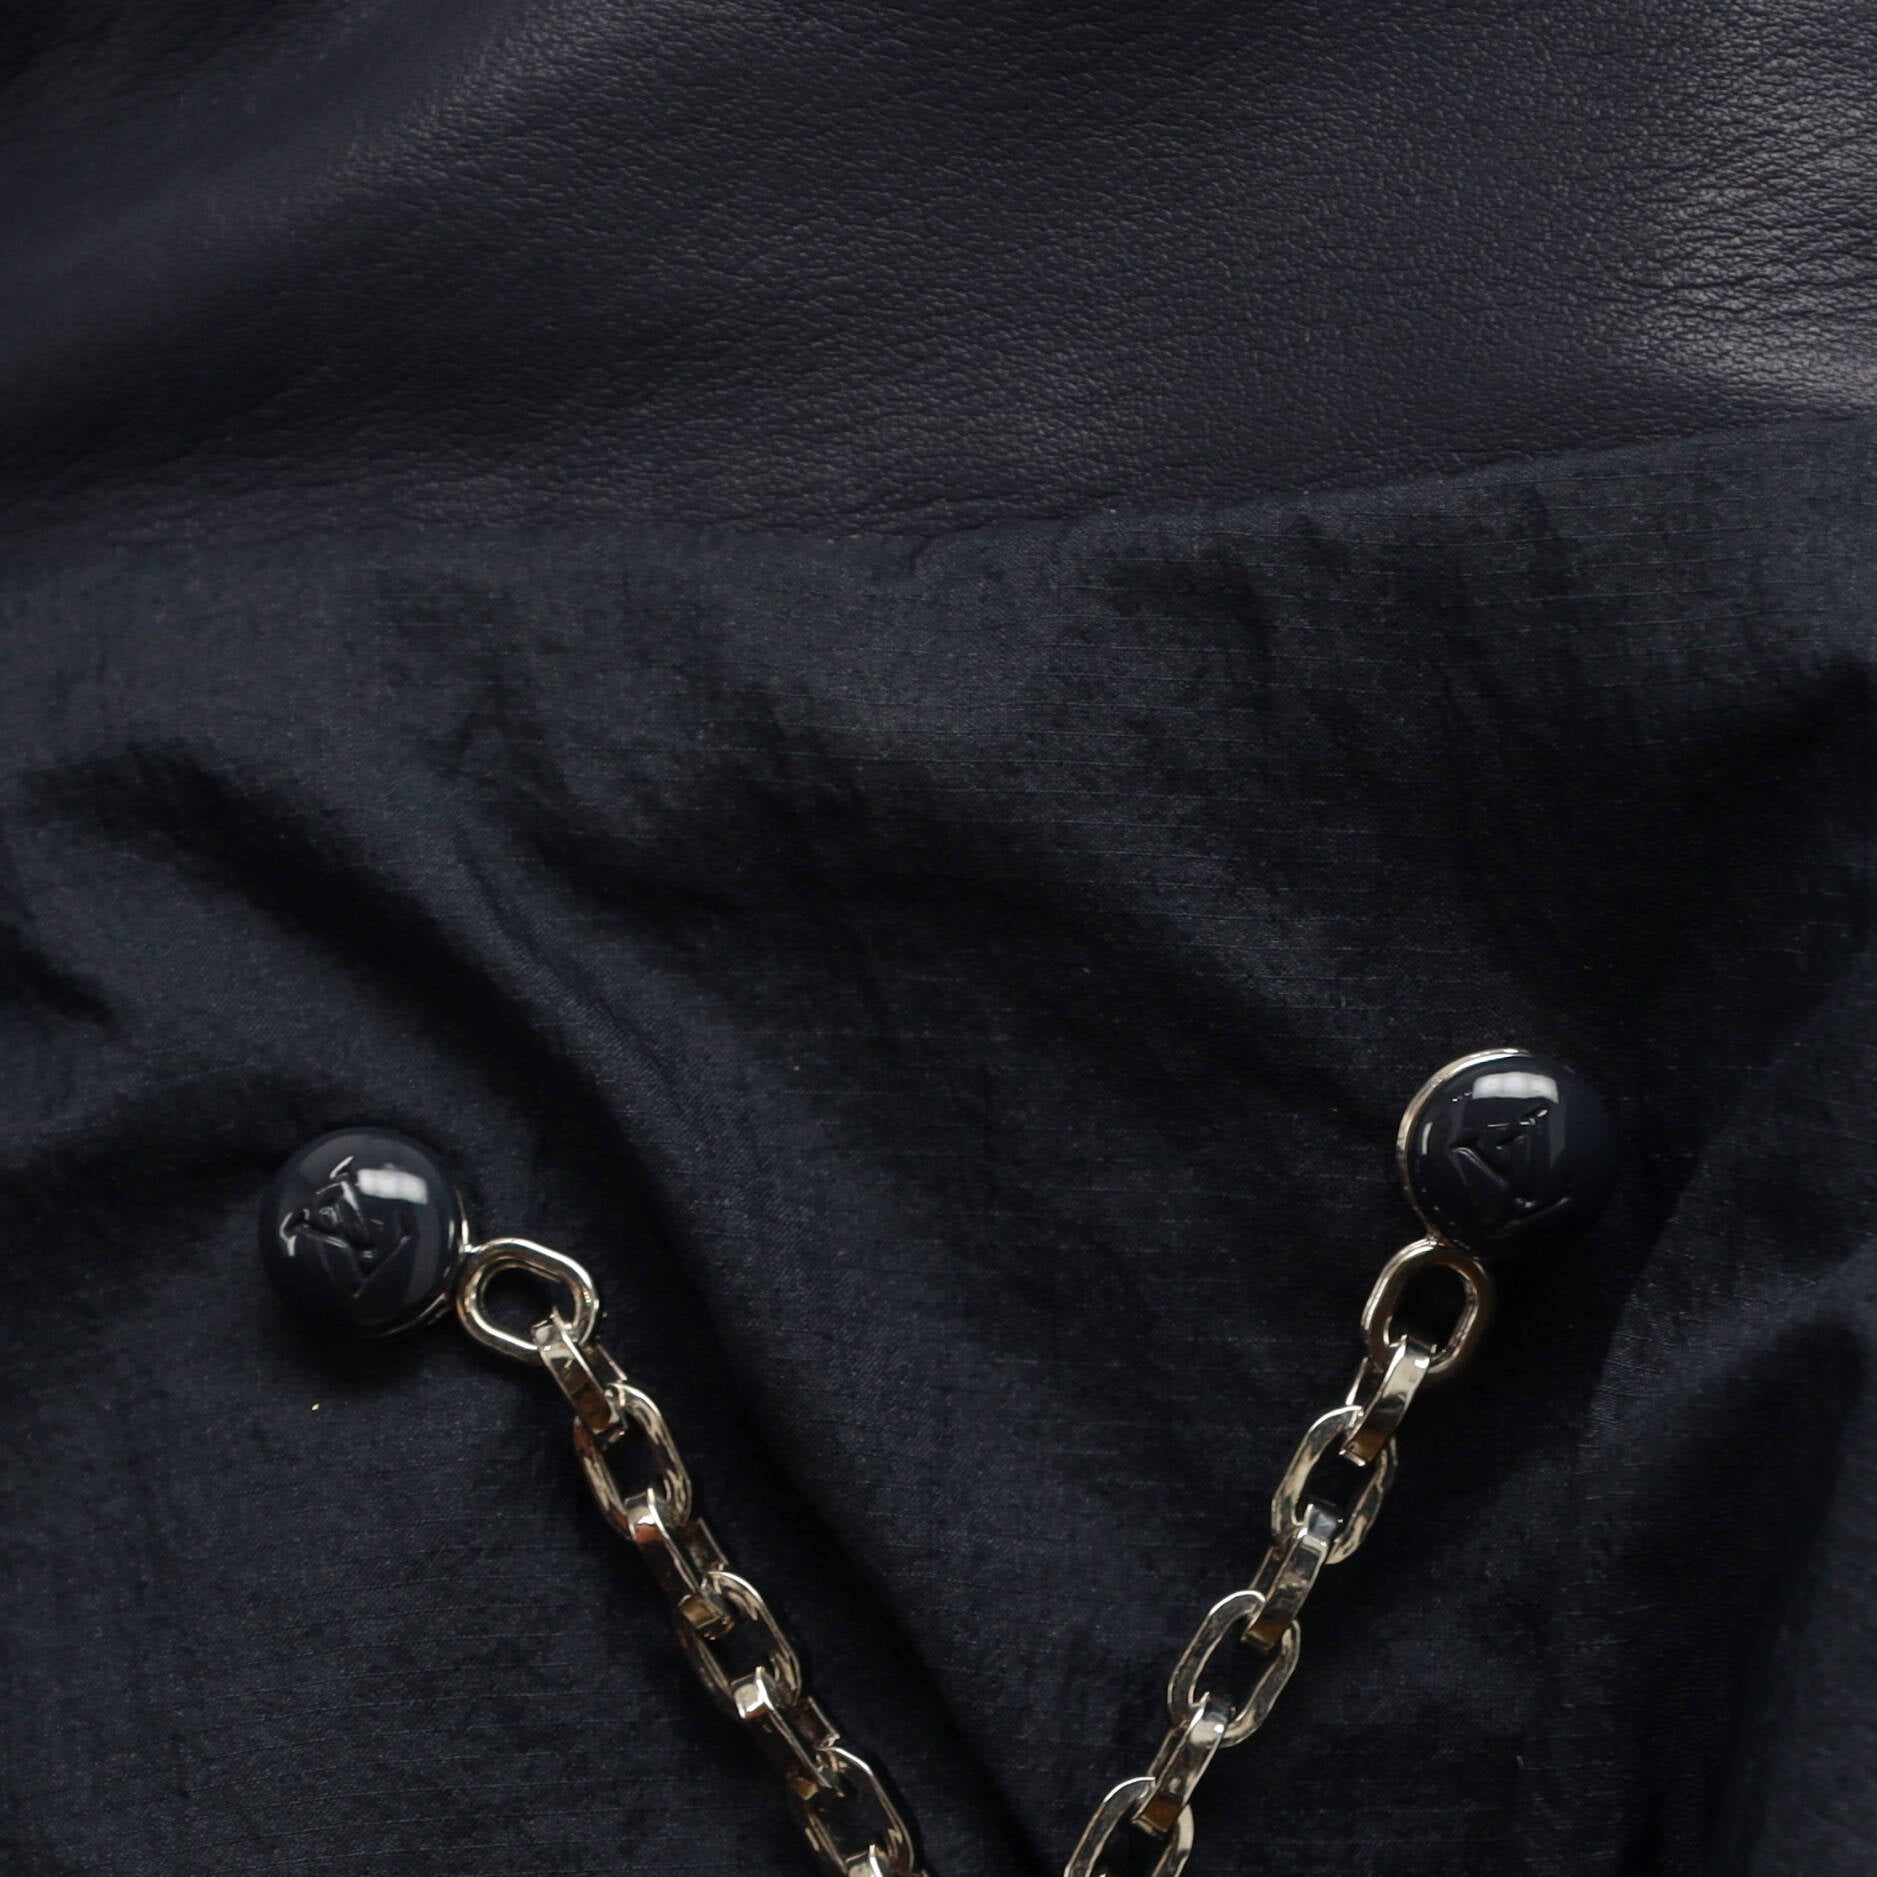 Louis Vuitton Men's Contrast Lapel Blazer Sequins with Polyester Blend